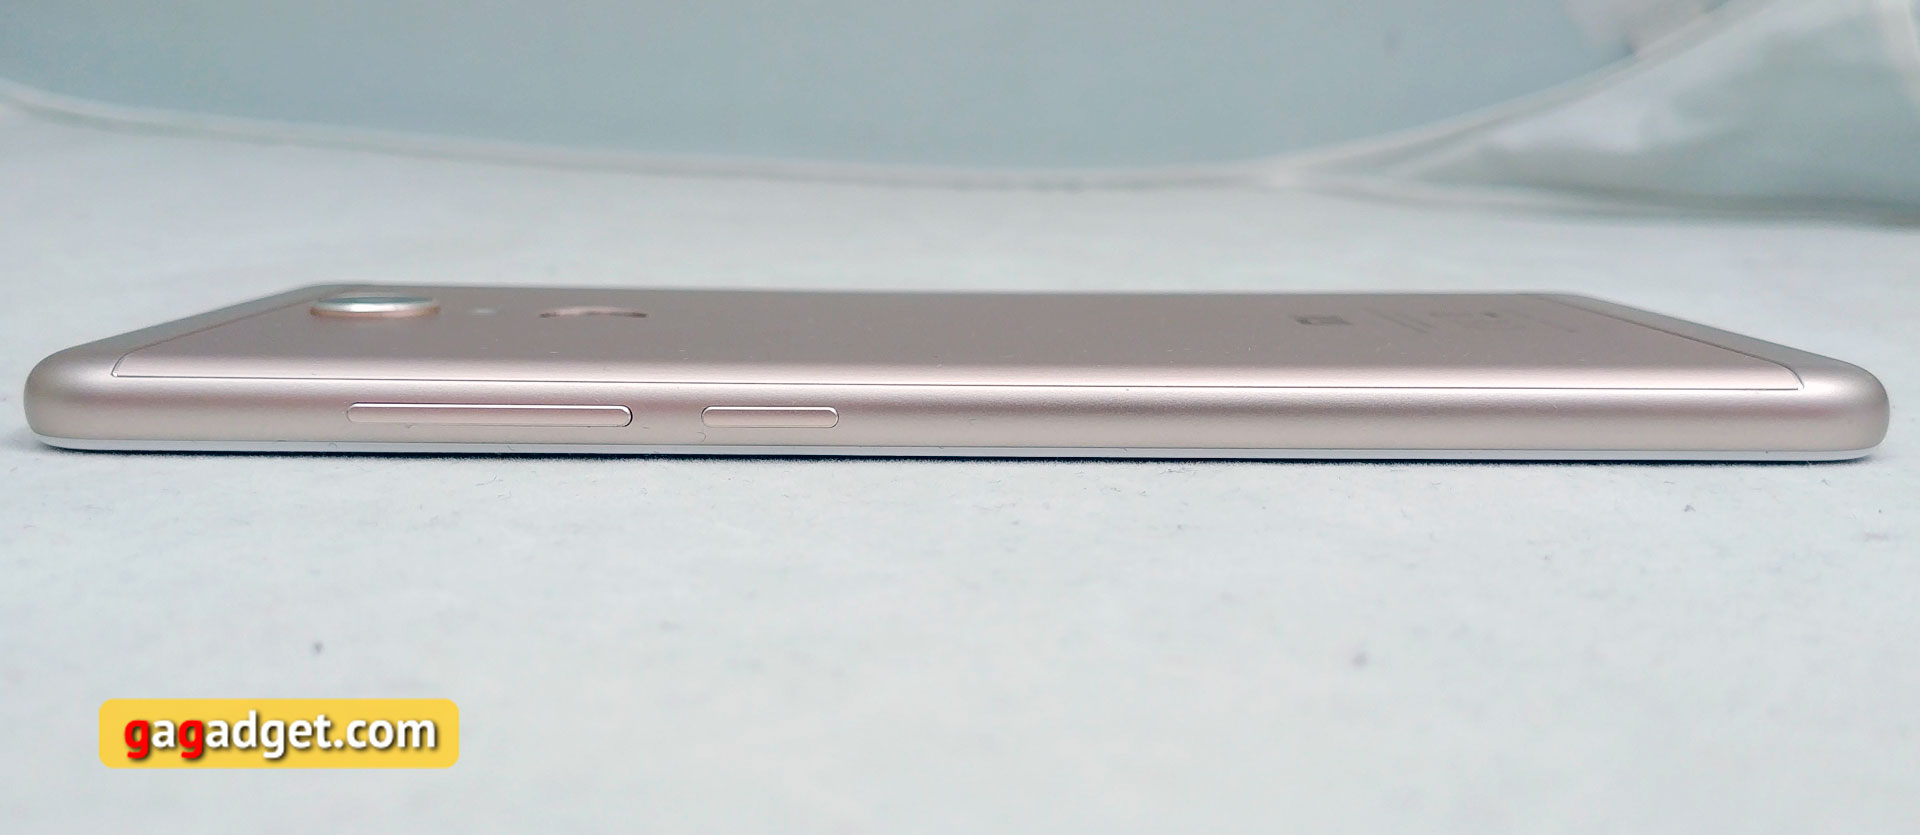 Обзор Xiaomi Redmi 5: хитовый бюджетный смартфон теперь с экраном 18:9-8